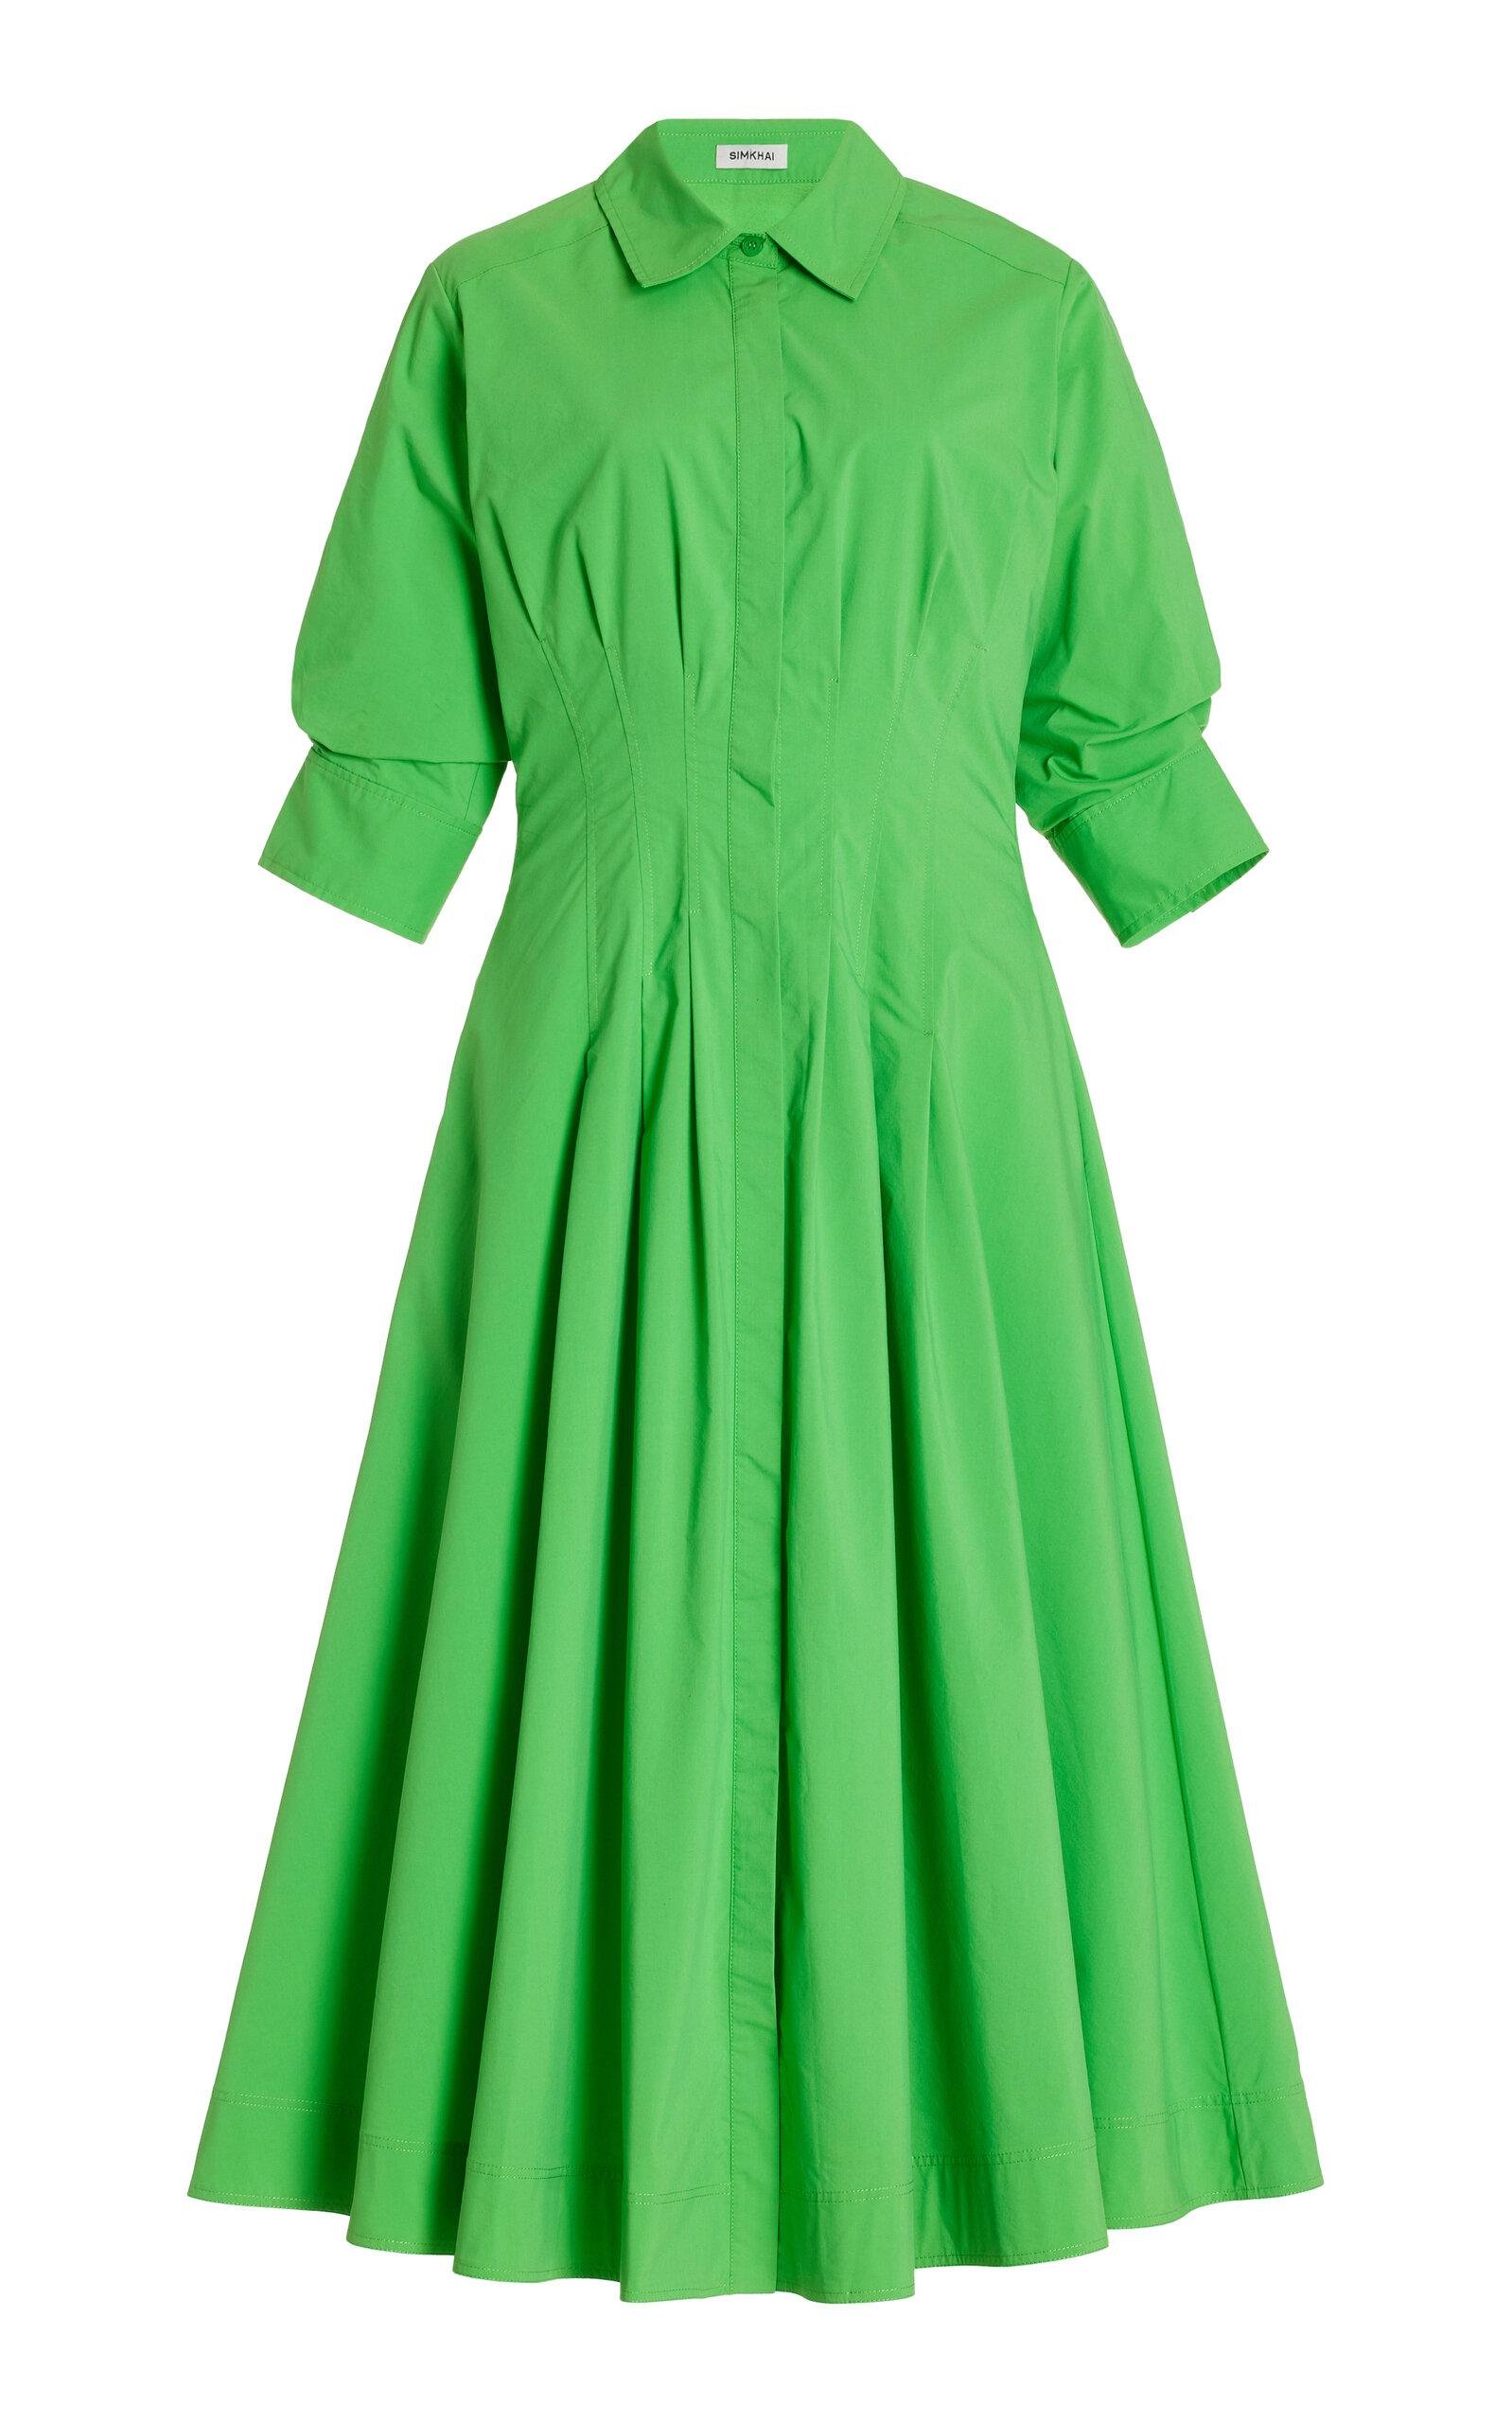 SIMKHAI - Jazz Pintucked Cotton-Blend Midi Shirt Dress - Green - XS - Moda Operandi by SIMKHAI